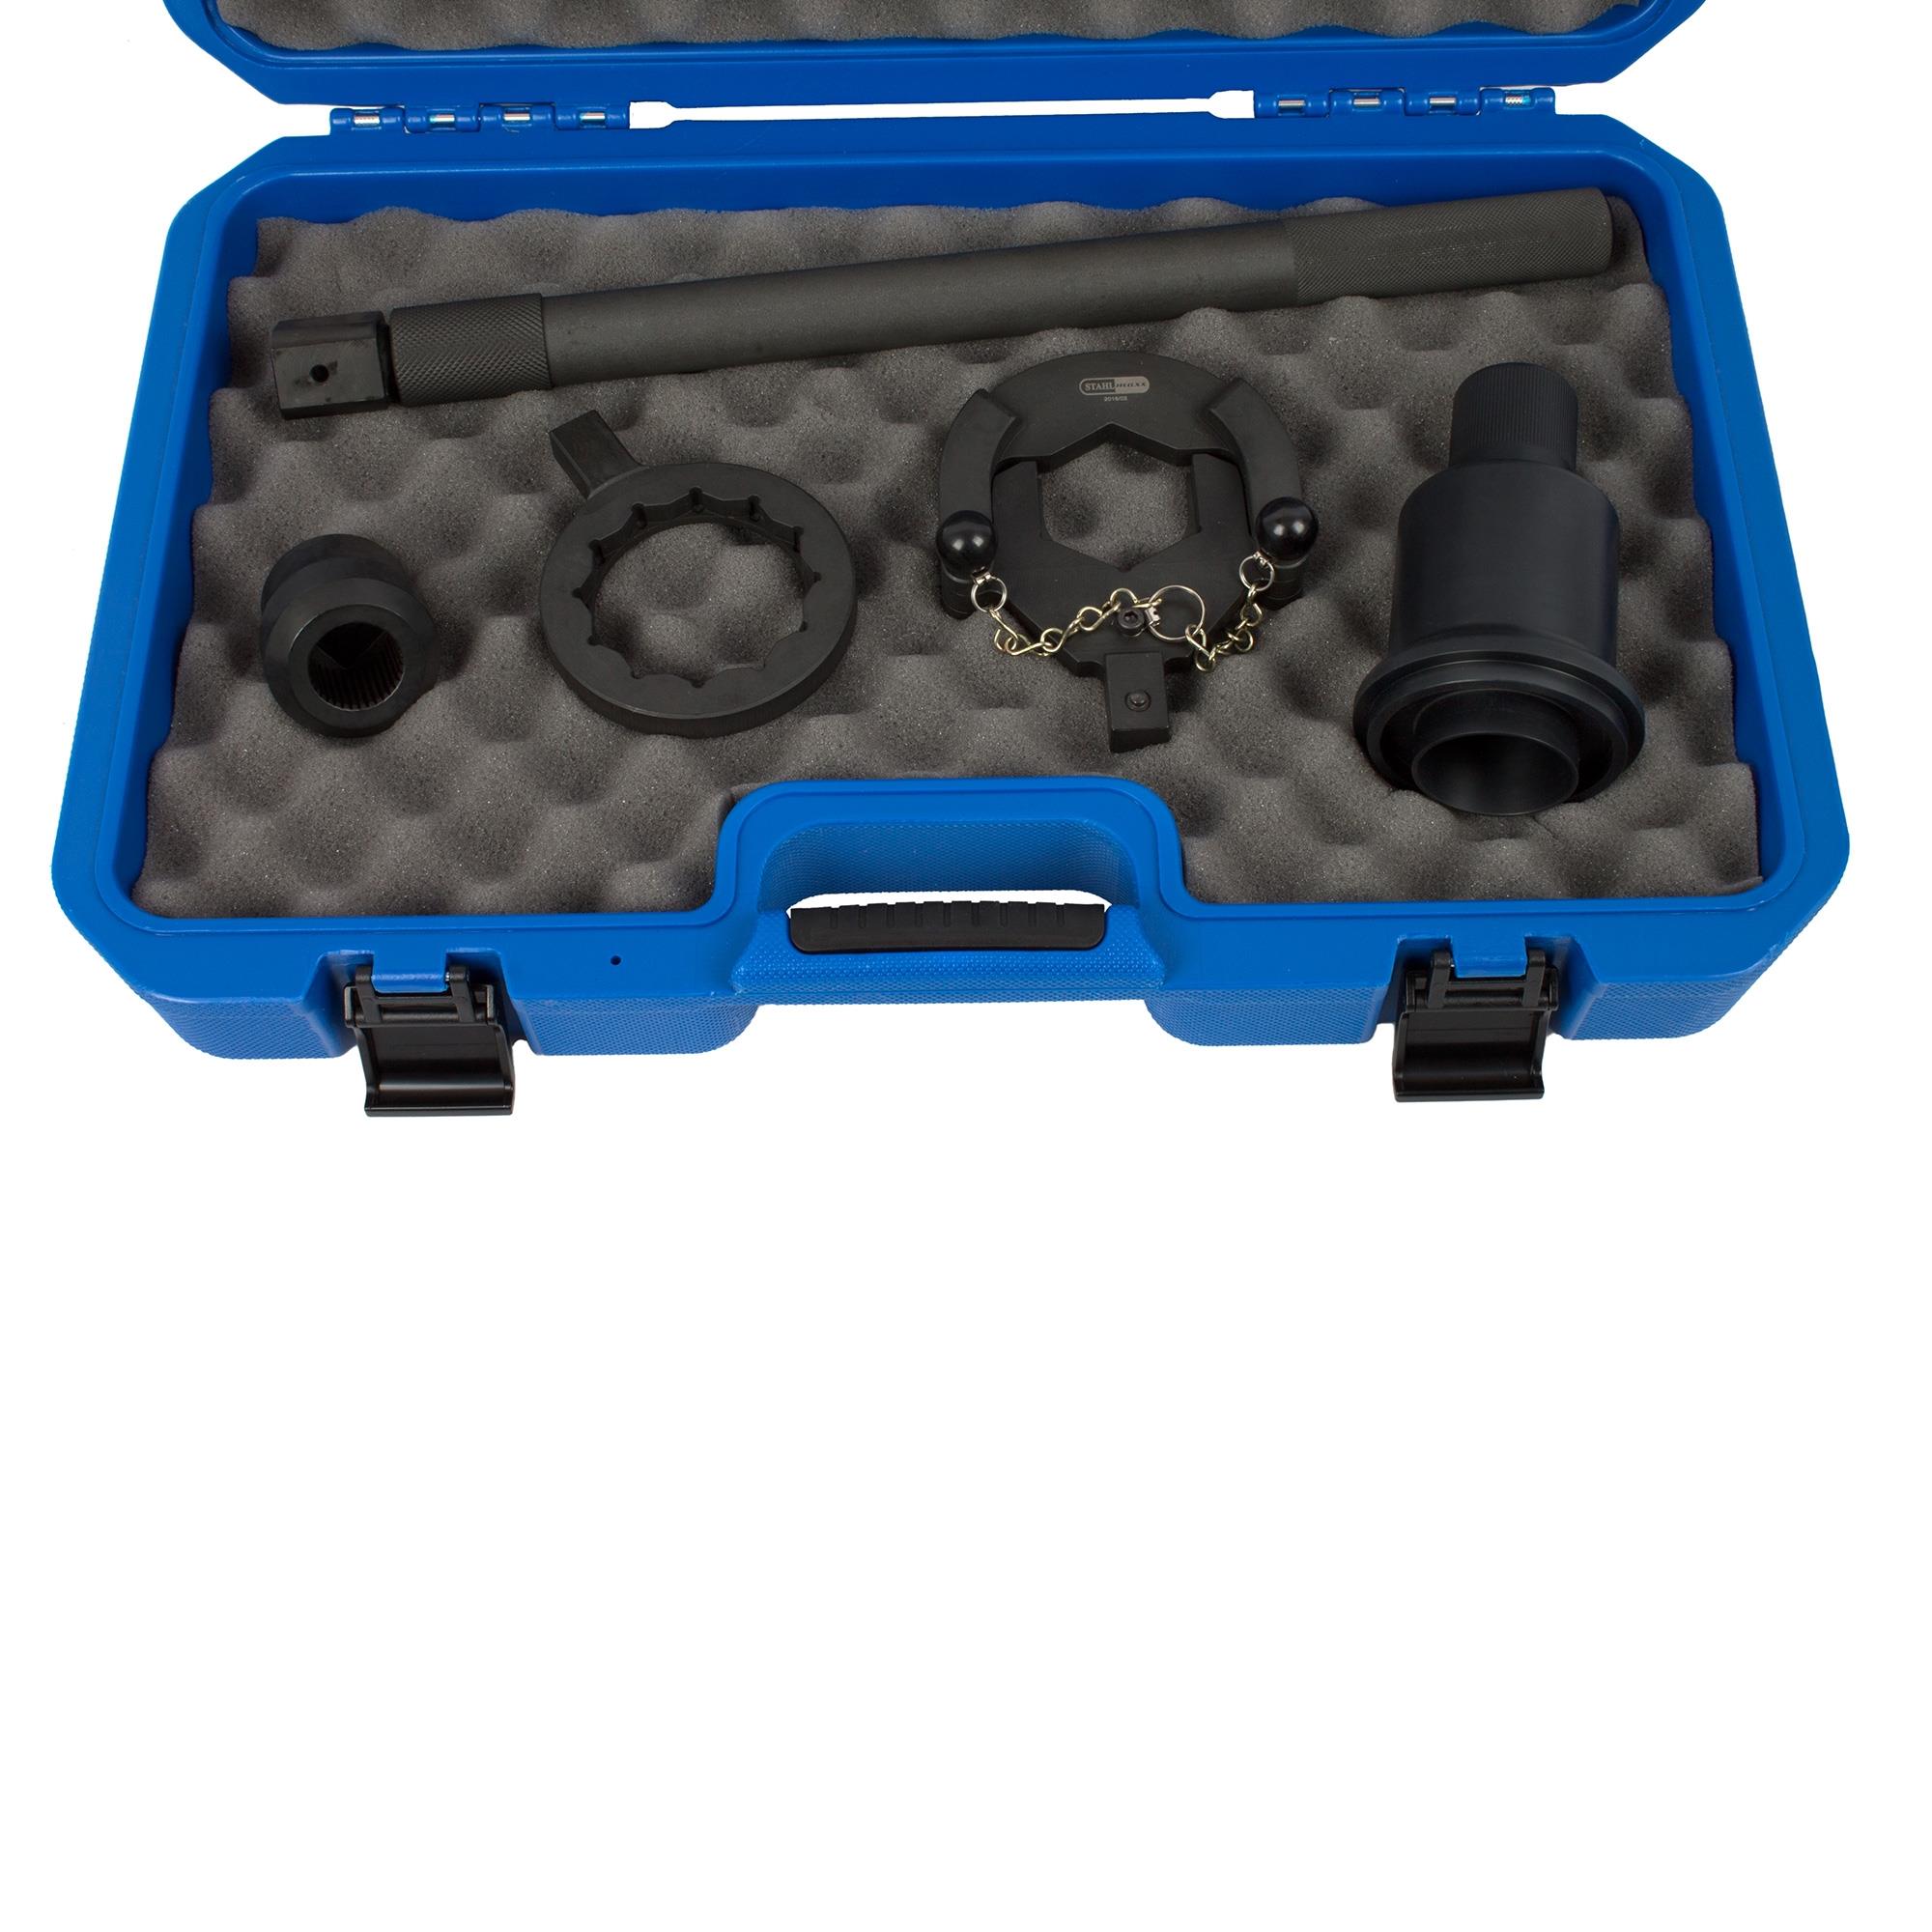 Wellendichtring-Werkzeugsatz für Differential und Verteilergetriebe, für BMW  Ein- und Ausgangswelle, Instandsetzung & Prüfung, Kupplung / Getriebe, Spezialwerkzeug